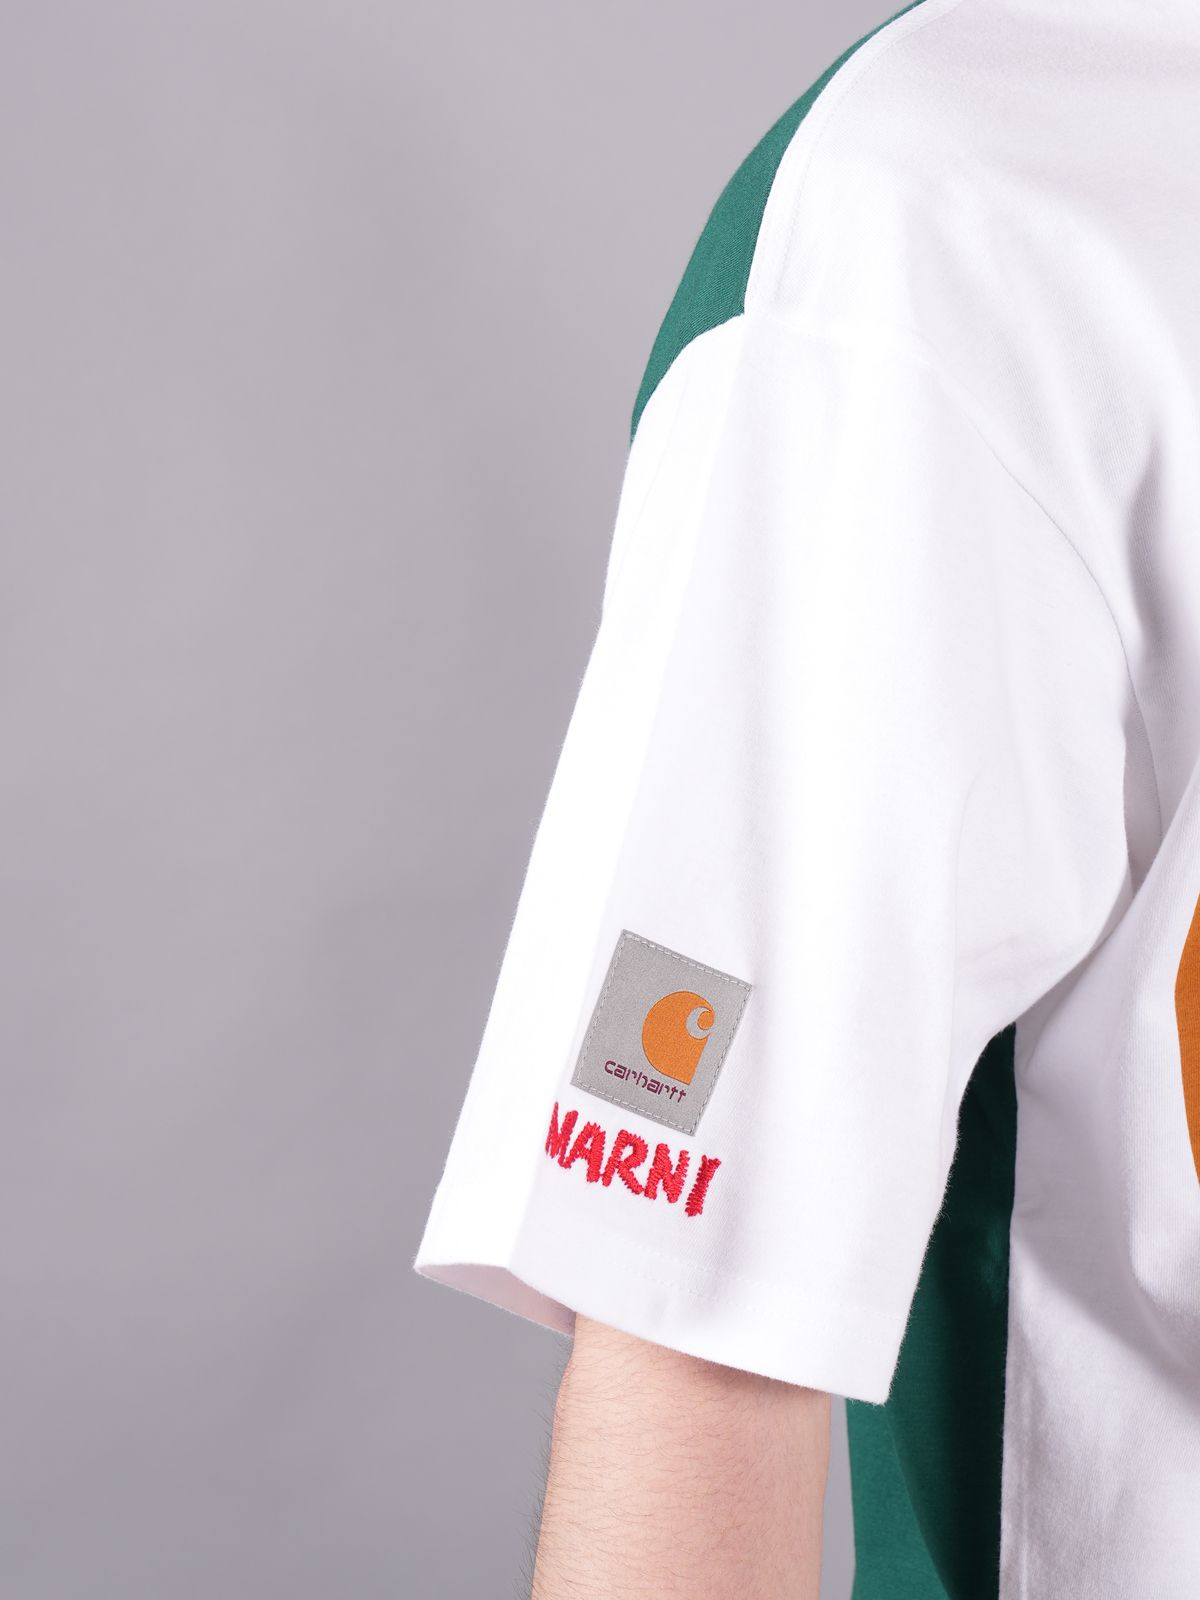 MARNI - 【ラスト1点】 MARNI X CARHARTT WIP - GREEN LOGO T-SHIRT